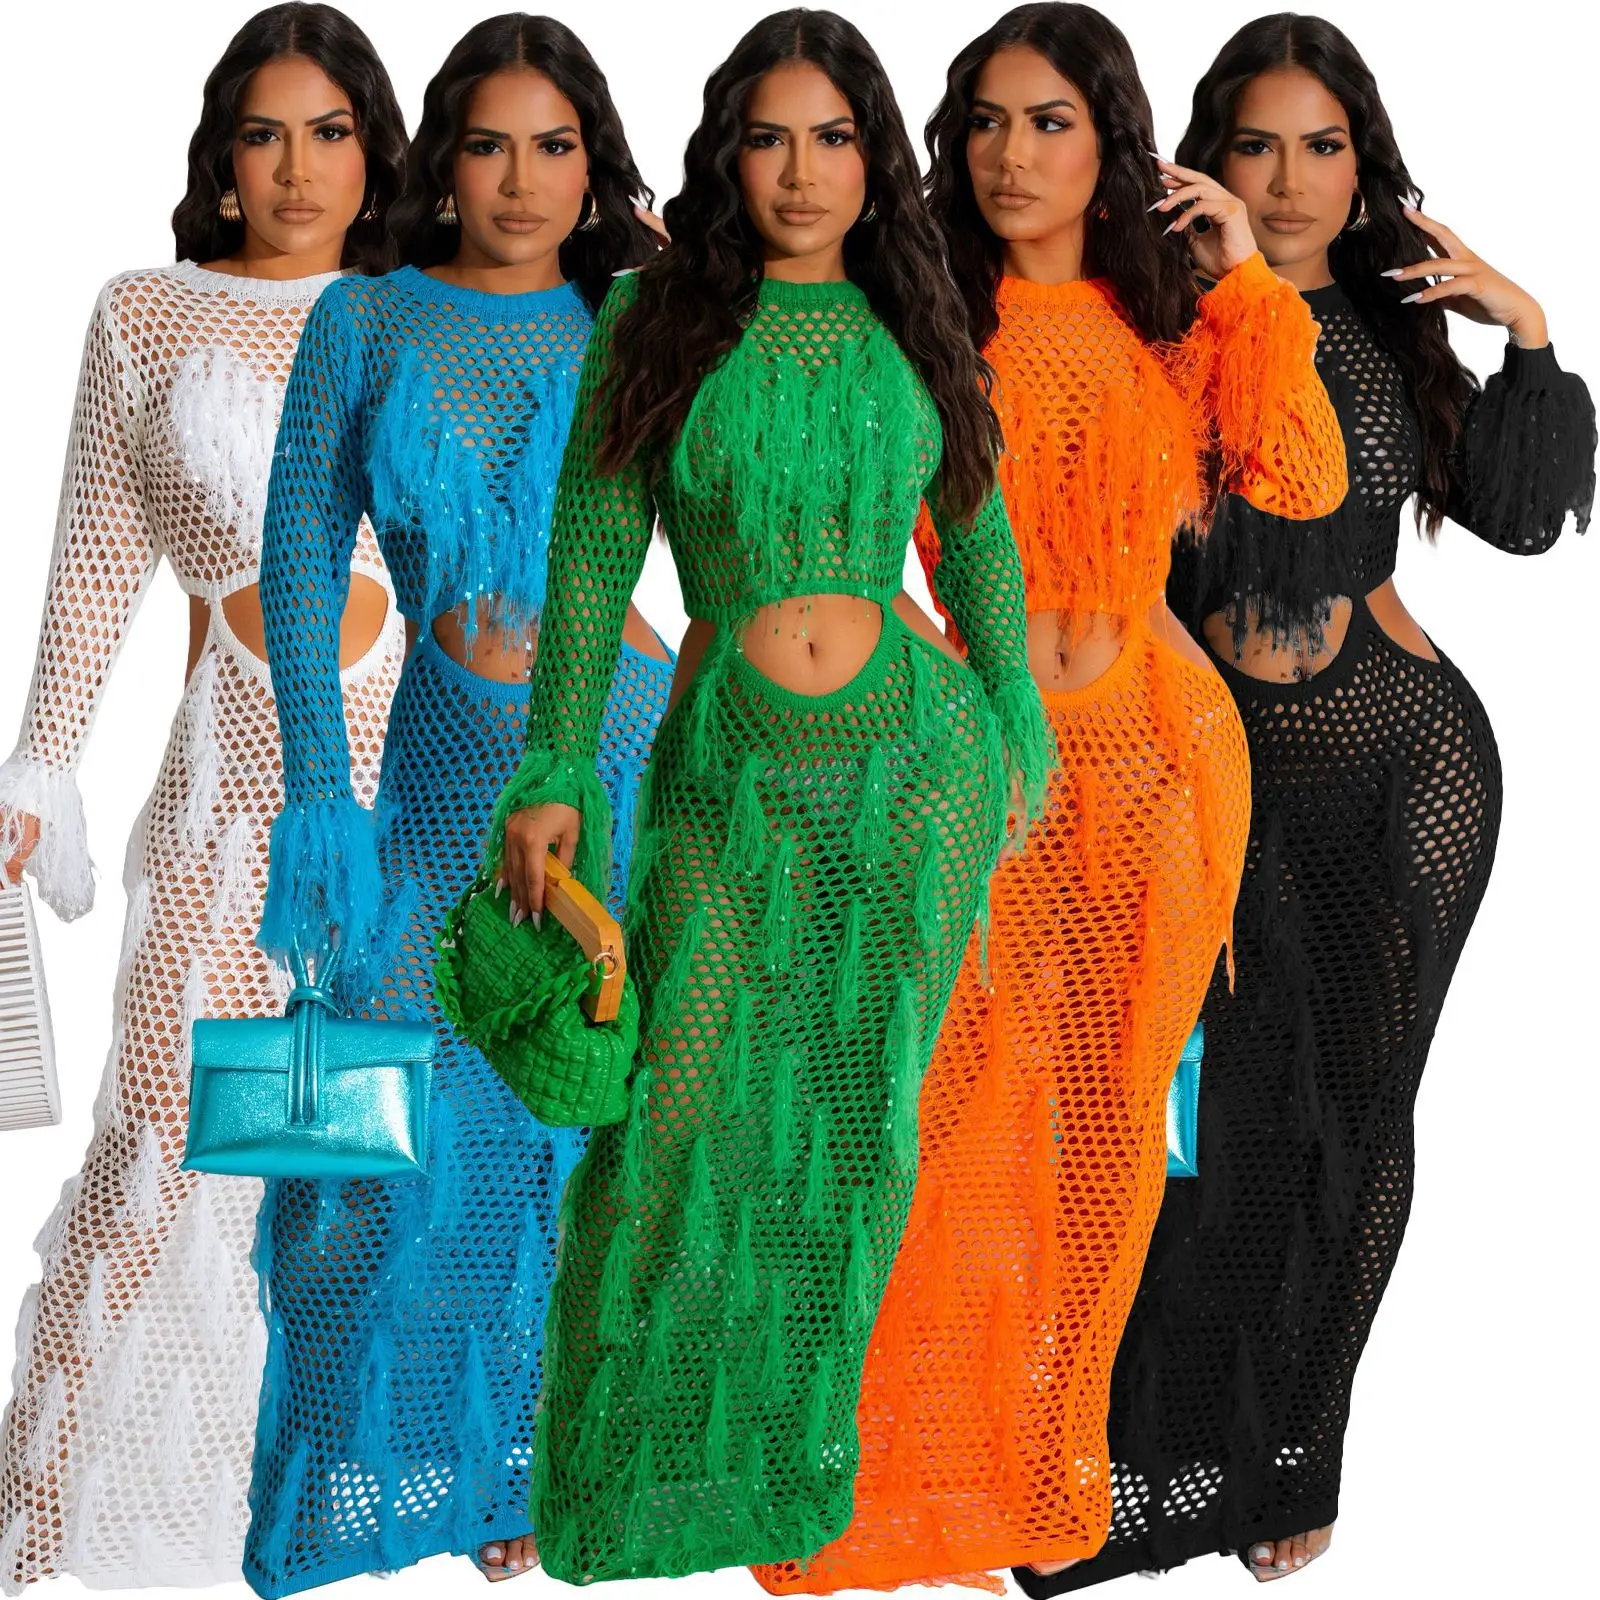 

Sexy Women Knitted Maxi Tassels Dress Long Sleeve Crochet Cover Ups Waist Cutout Long Dress Summer Hollow Out Beach Swimwear